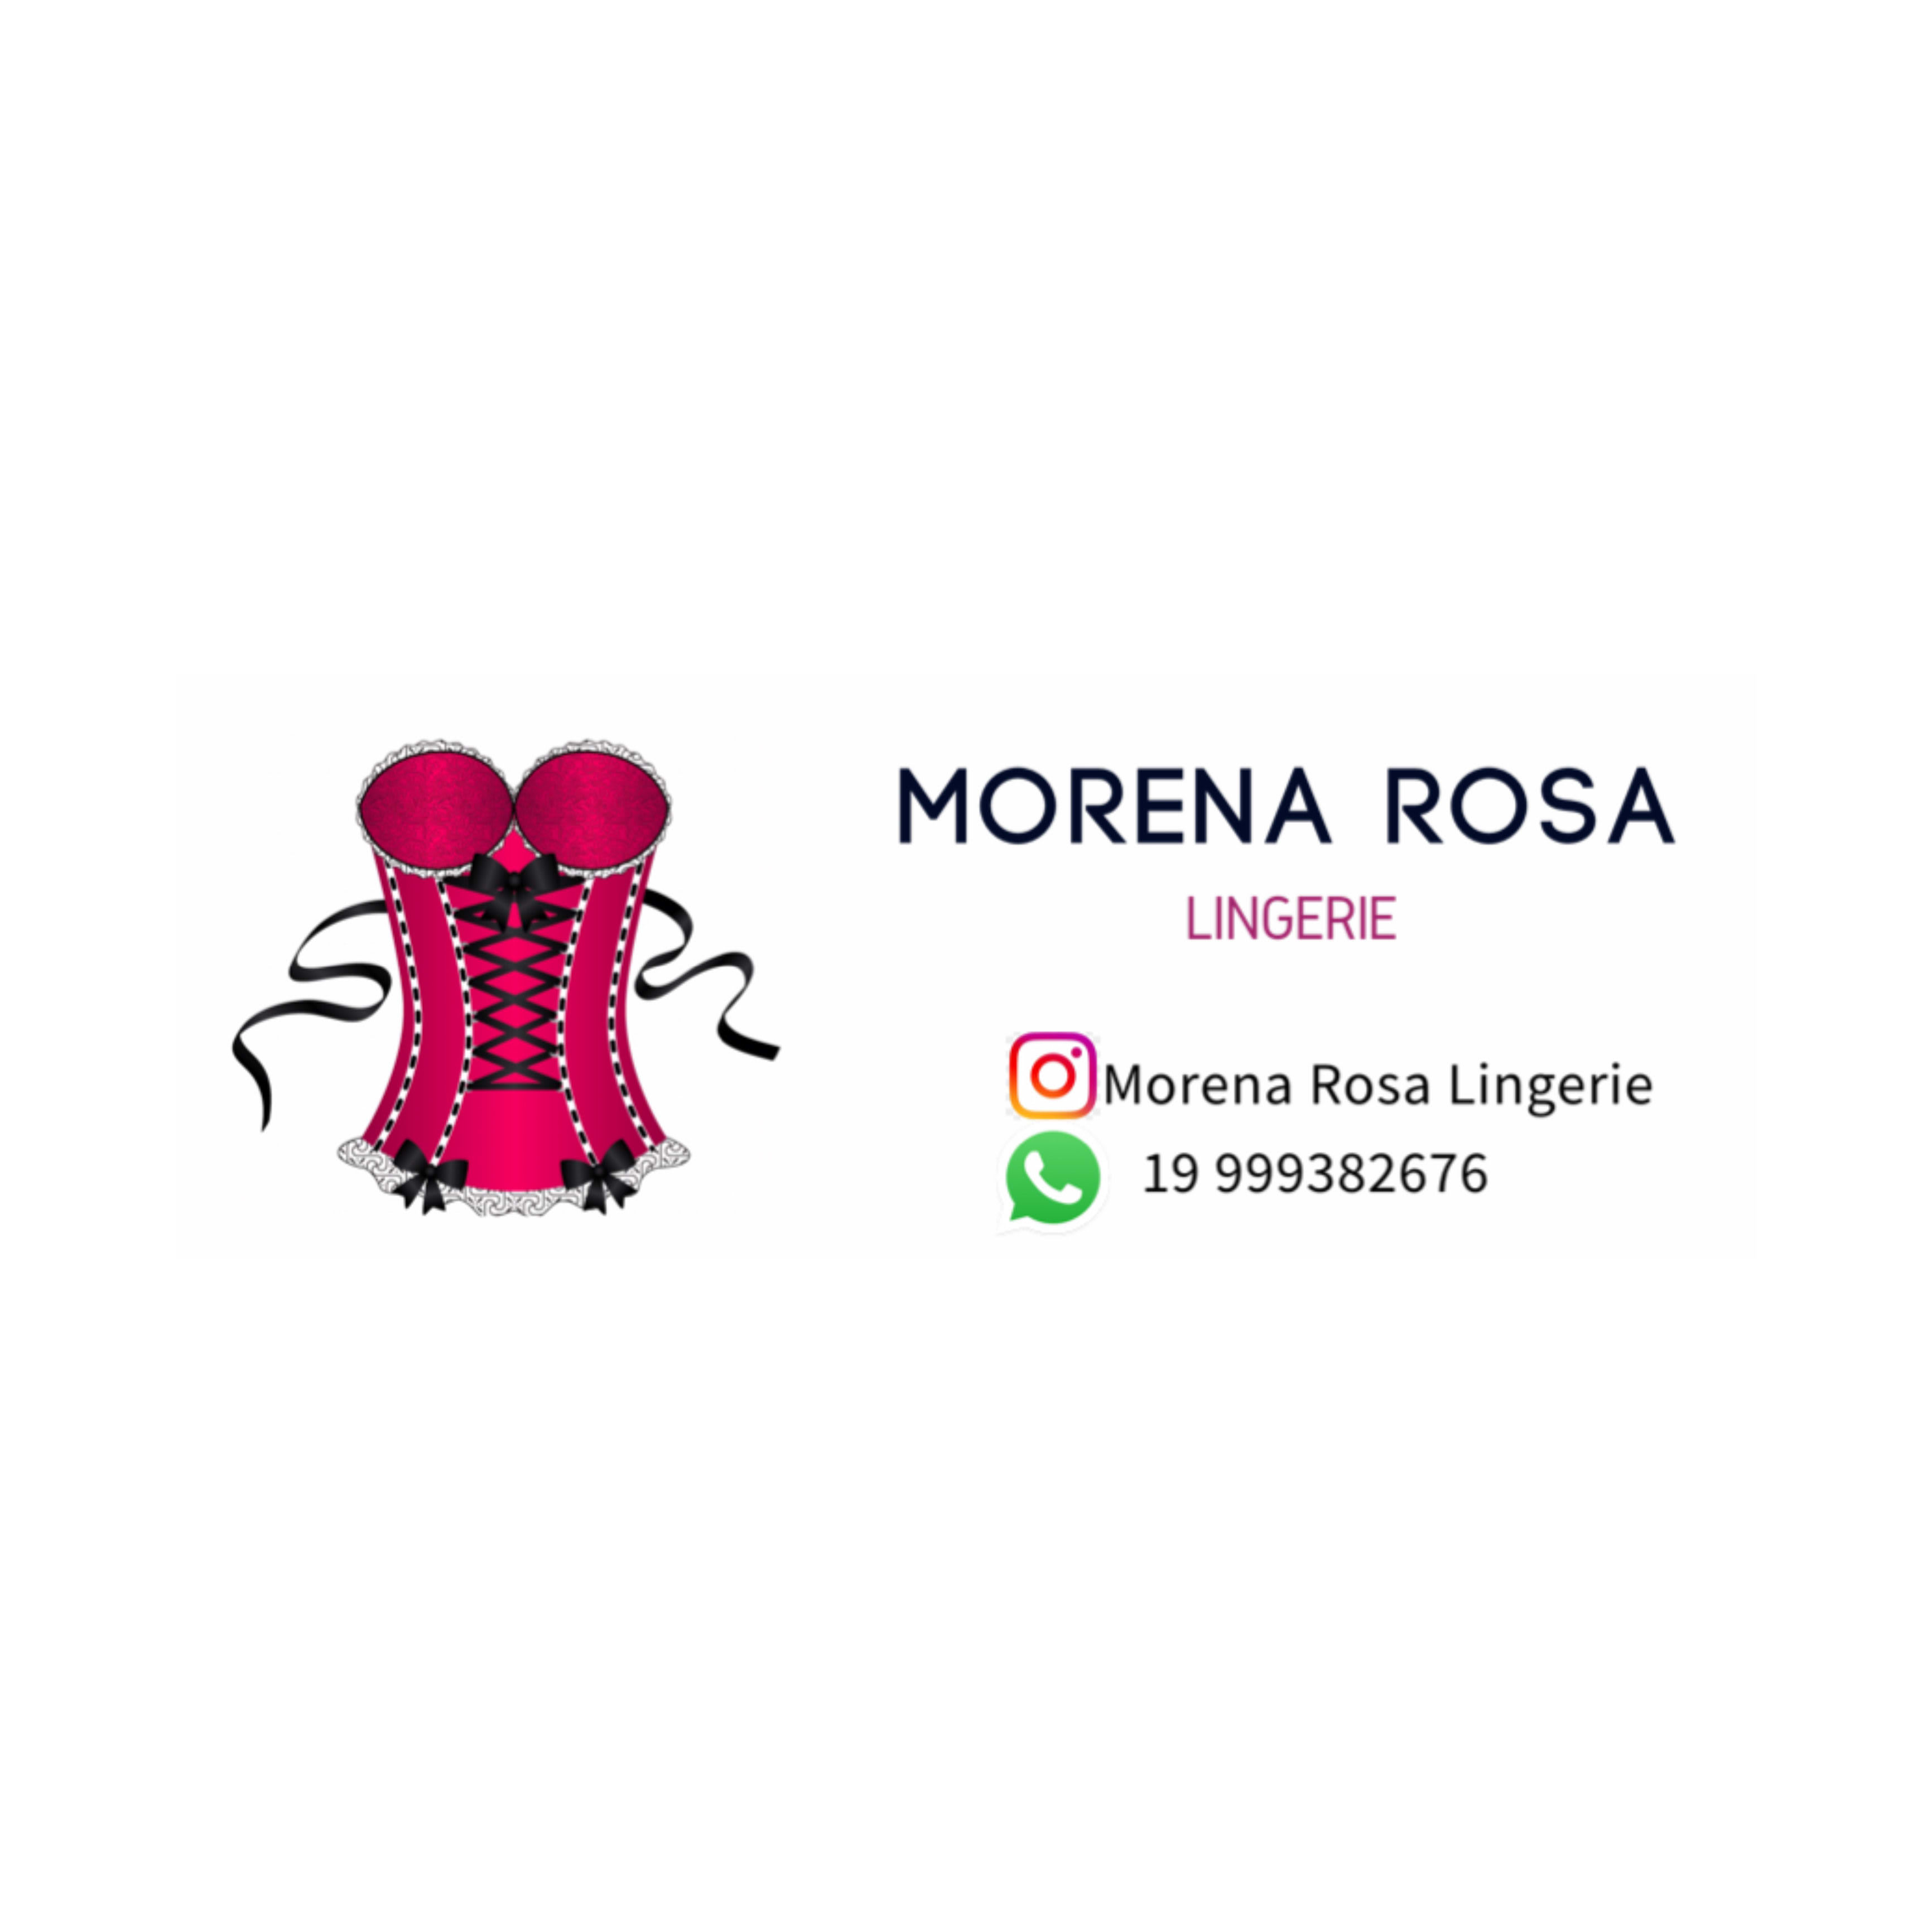 Morena Rosa Lingerie